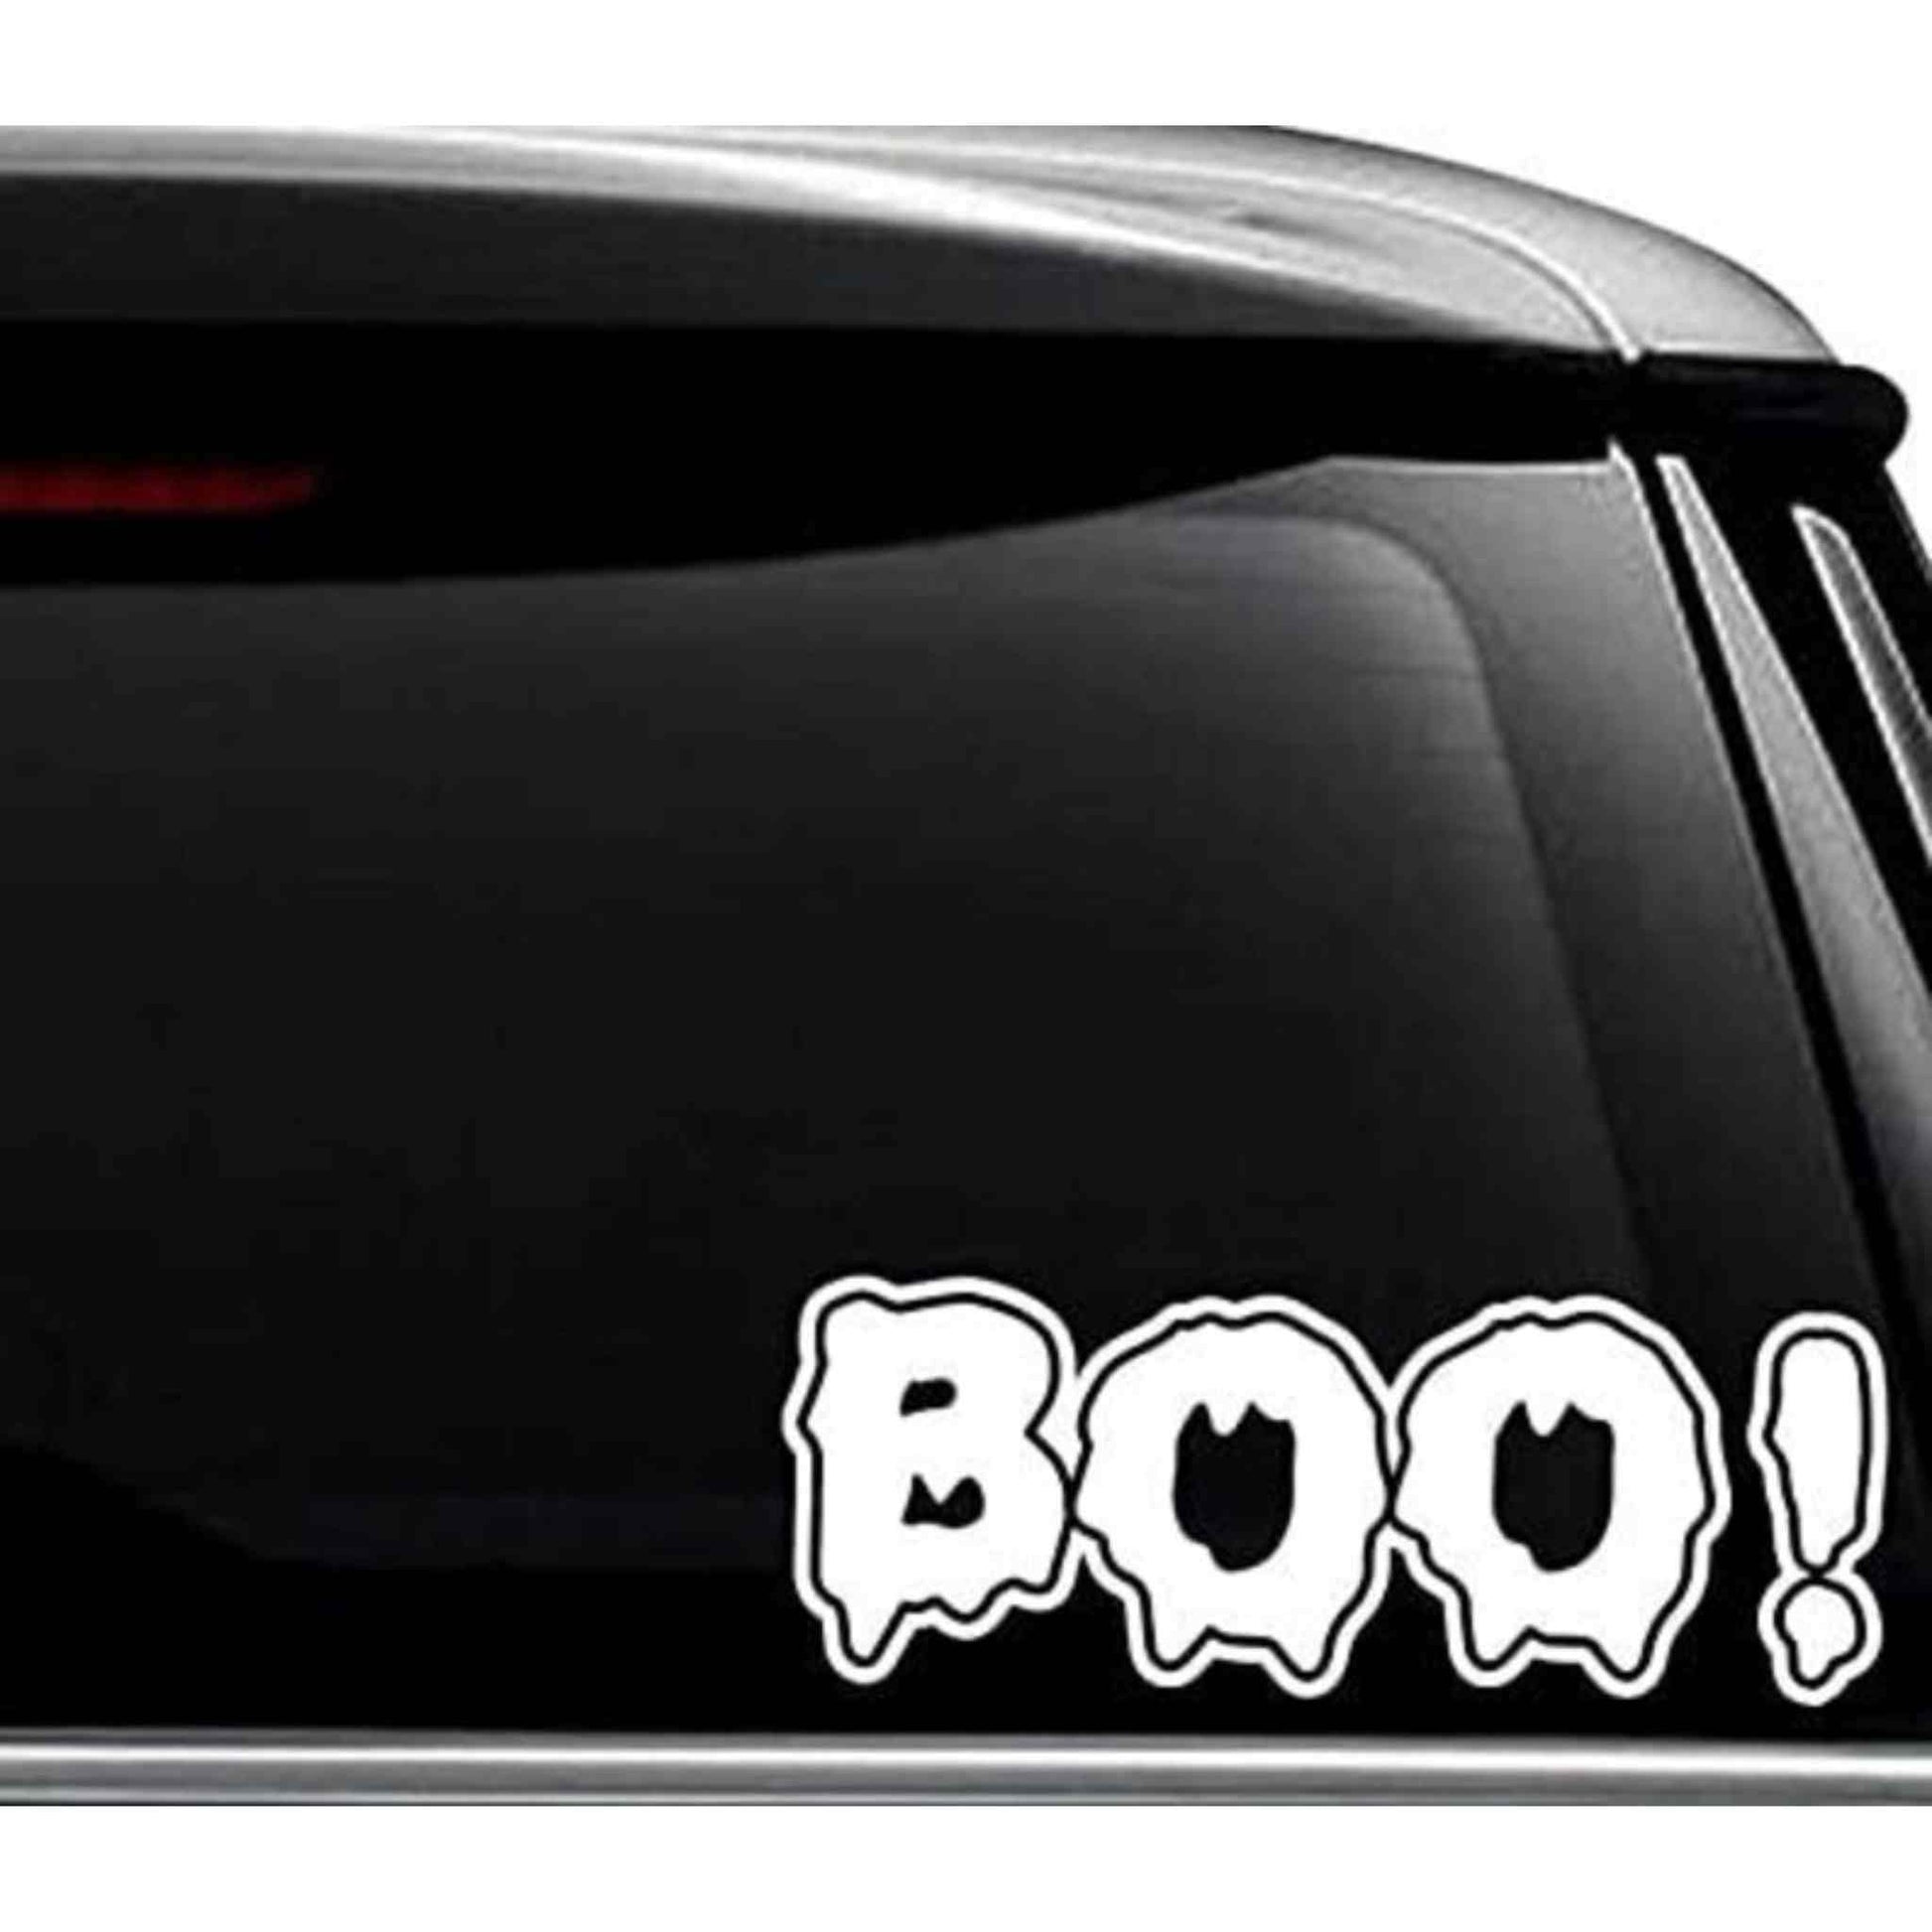 Sticker Halloween auto, alb, model text "BOO", din Oracal Premium cu aplicare usoara. Decor auto de Halloween.